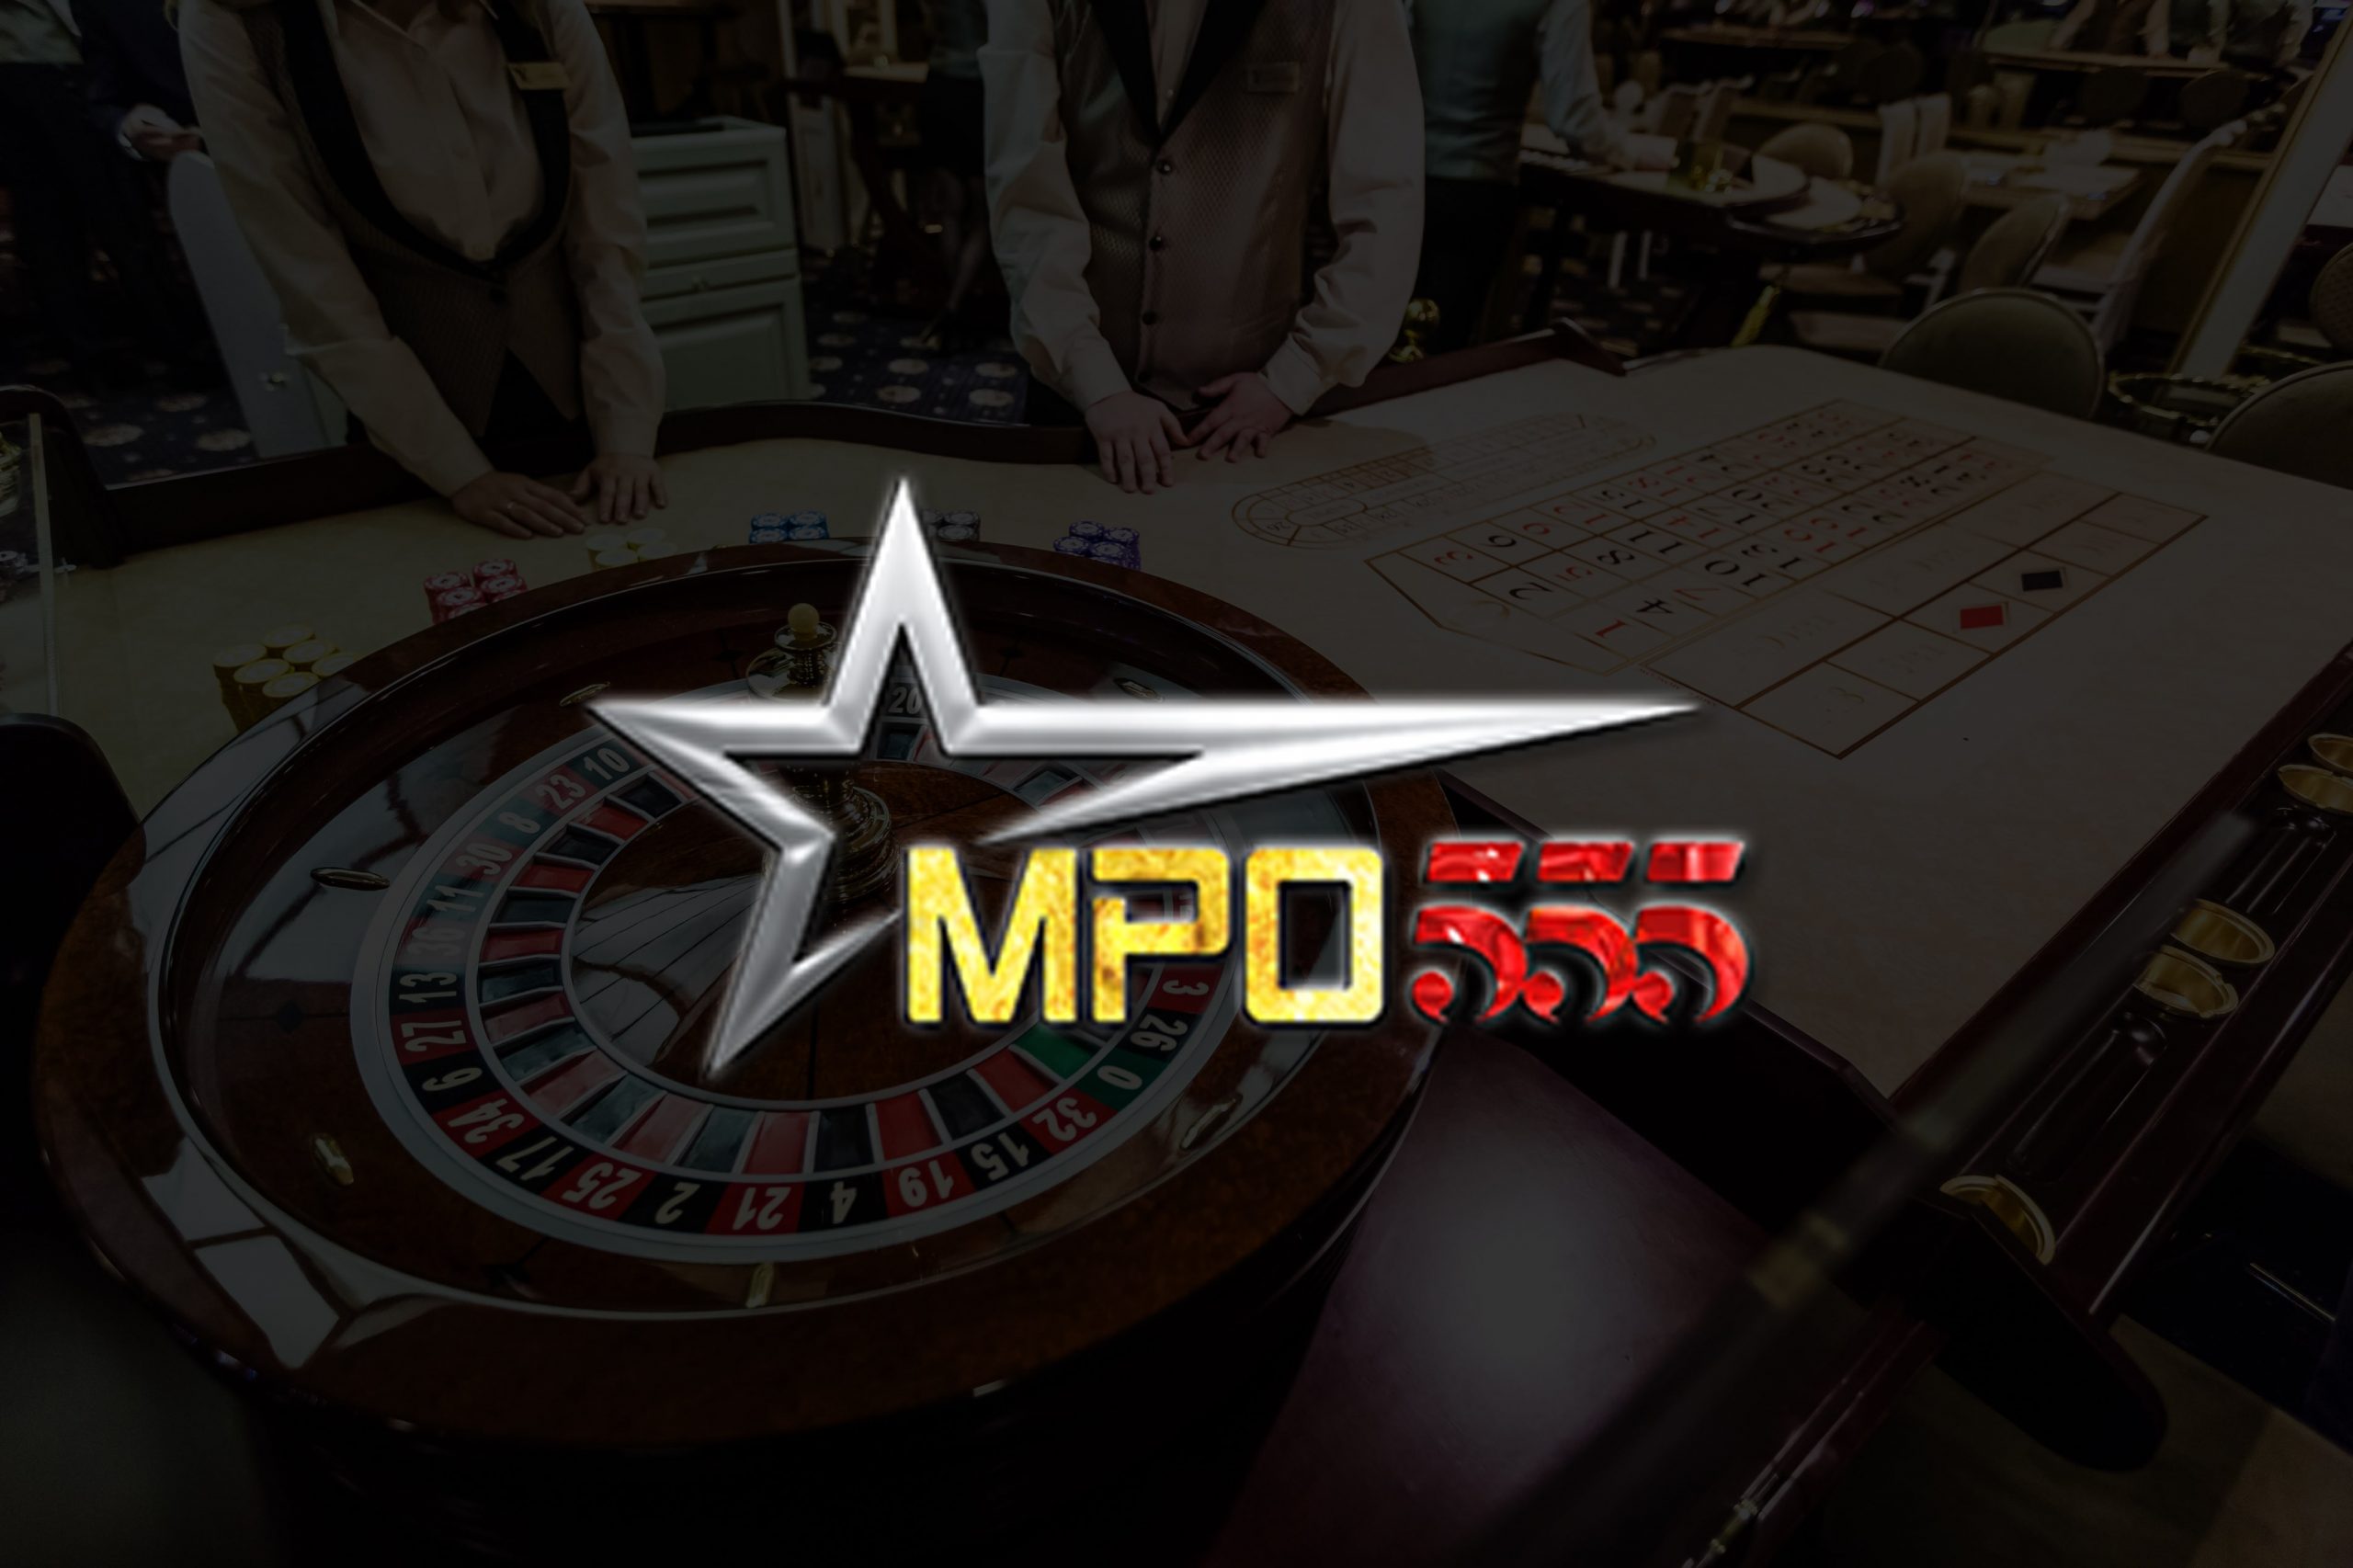 MPO555 온라인 도박의 게임 유형